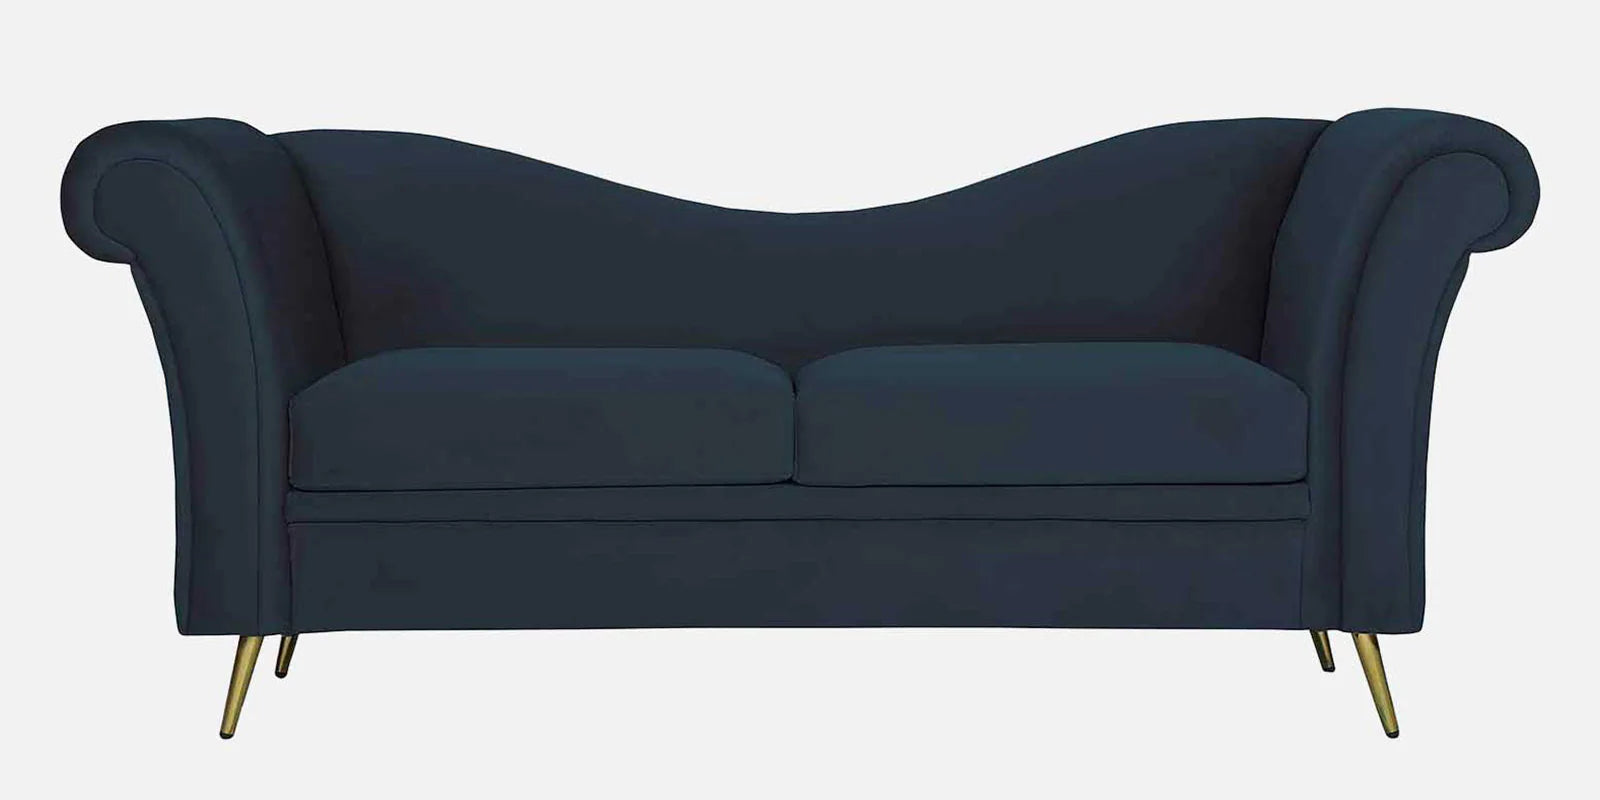 Velvet 2 Seater Sofa in Teal Blue Colour